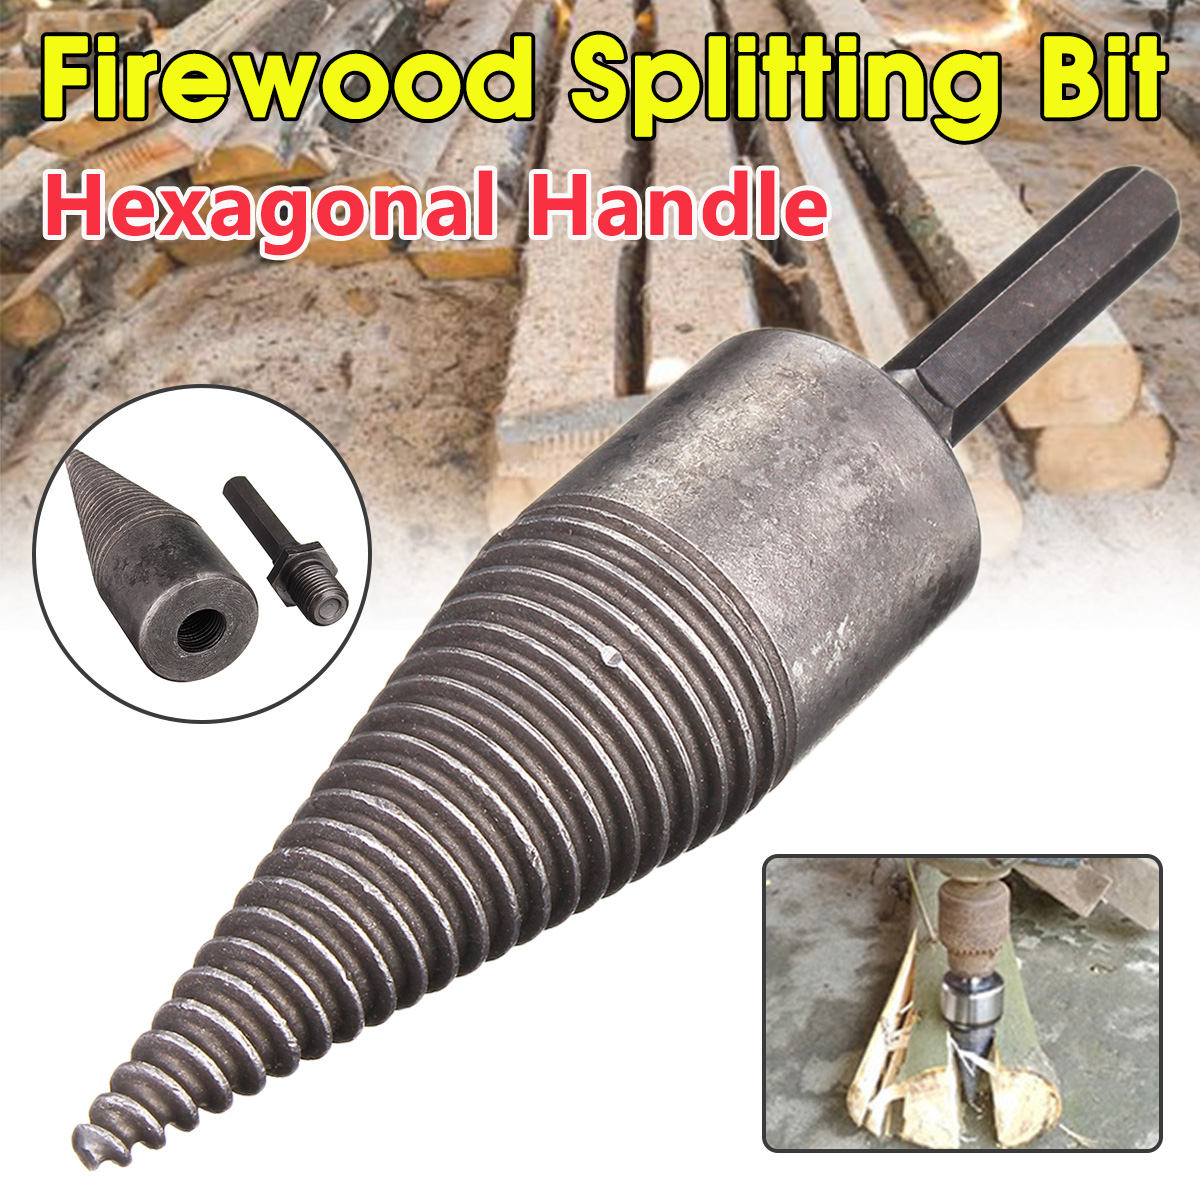 Hex-ShankSquare-Handle-Firewood-Splitting-Drill-Bit-Wood-Cone-Drilling-Tools-Kit-1632546-1